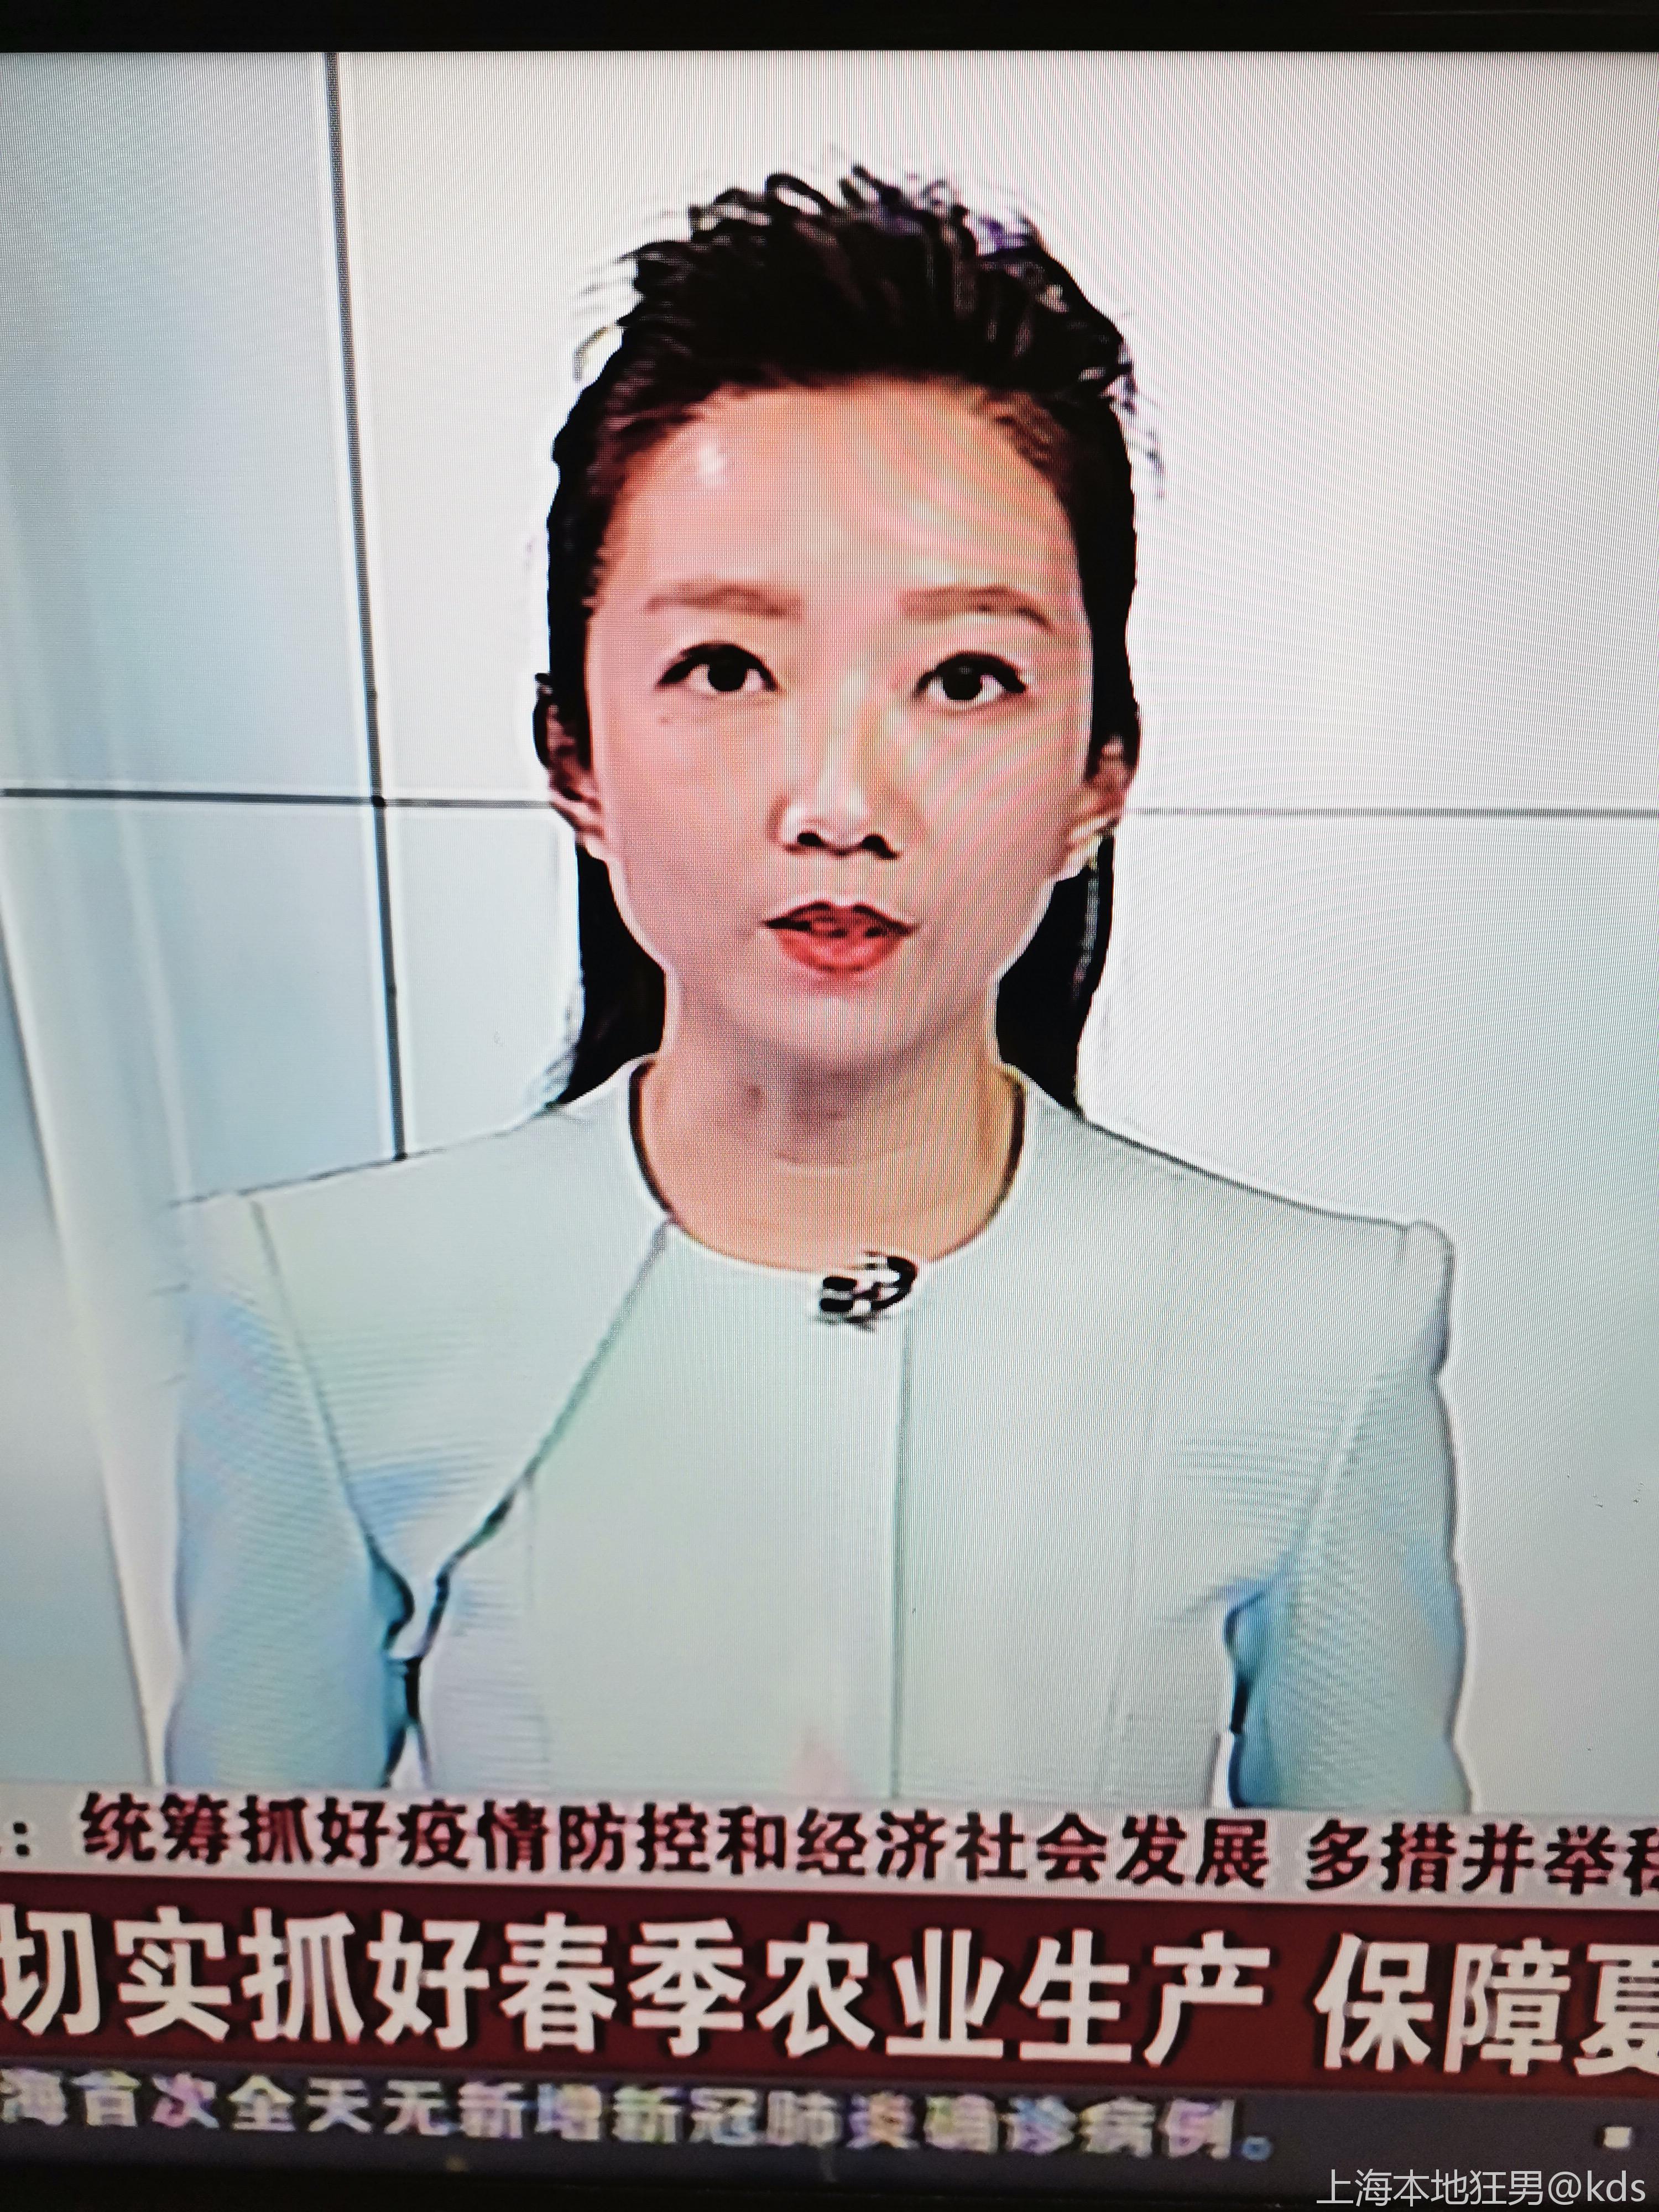 这个上海新闻台的女主持人很艳丽啊,是大美女哦